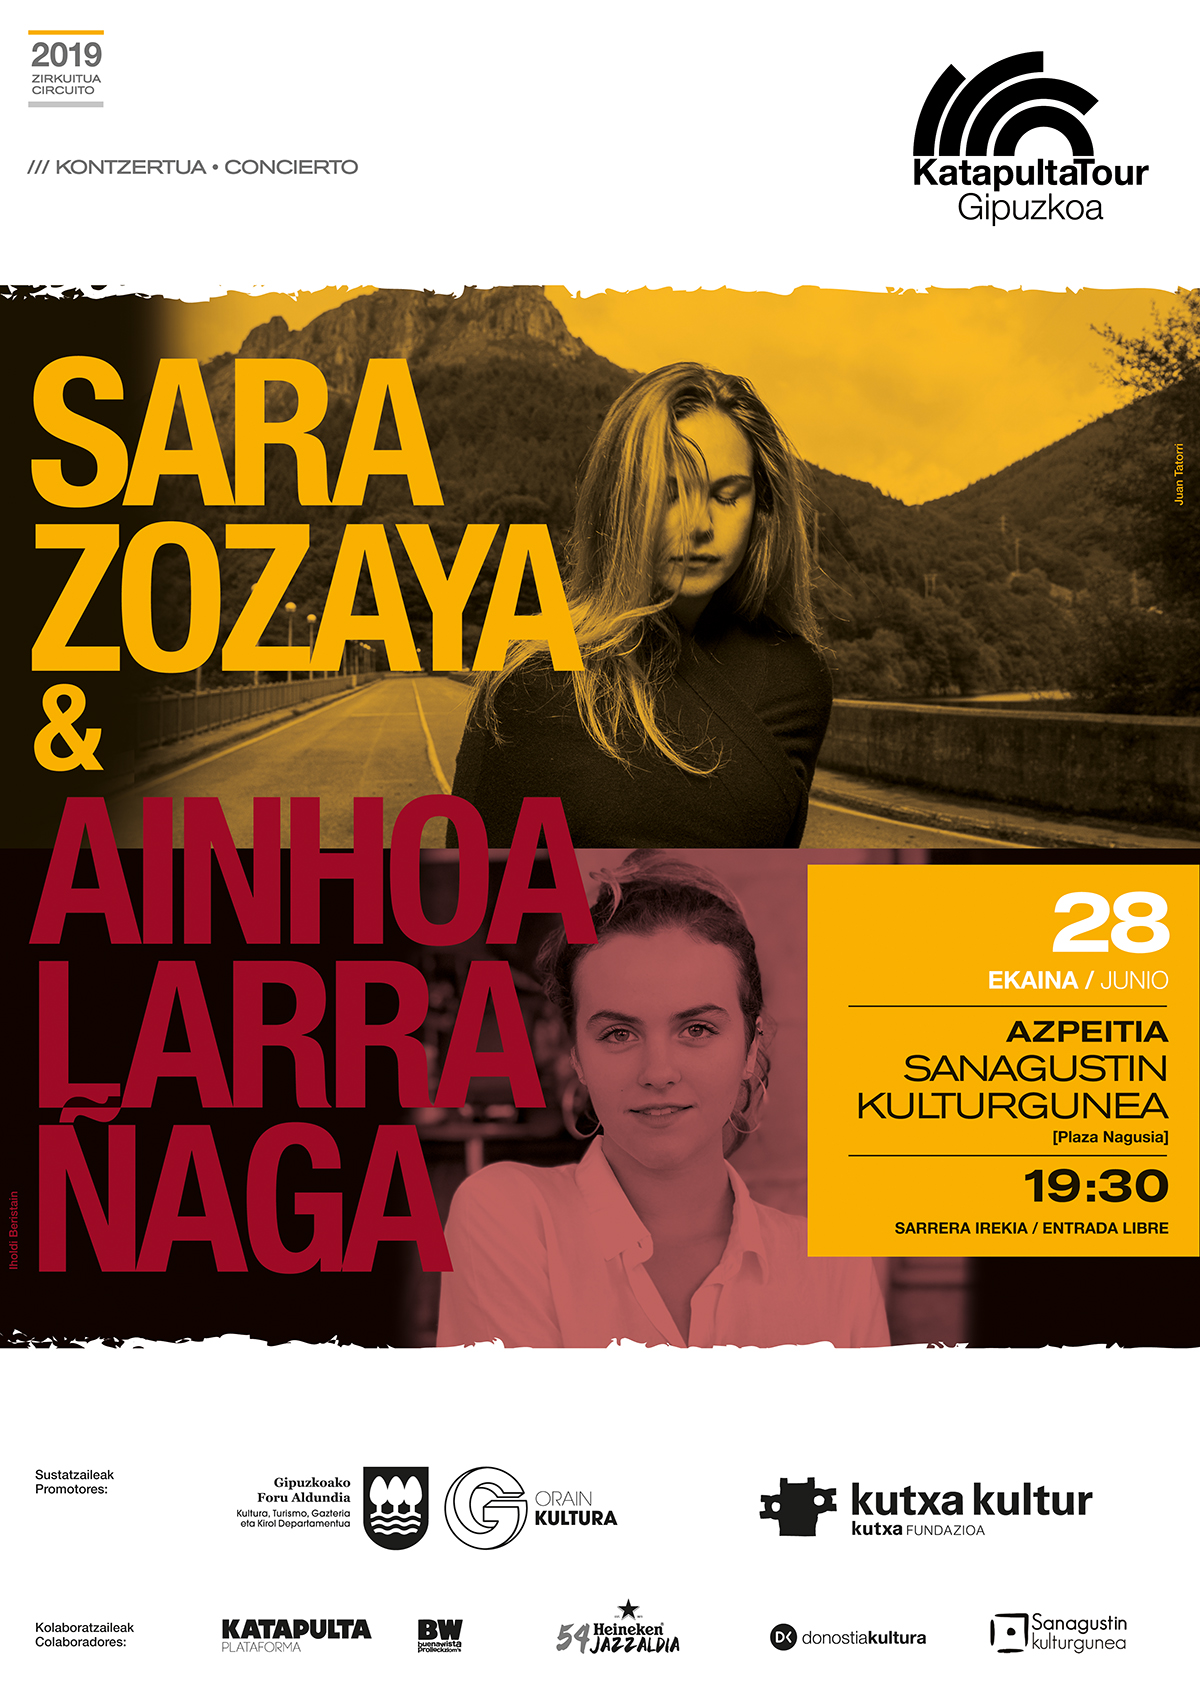 Sara Zozaya + Ainhoa Larrañaga